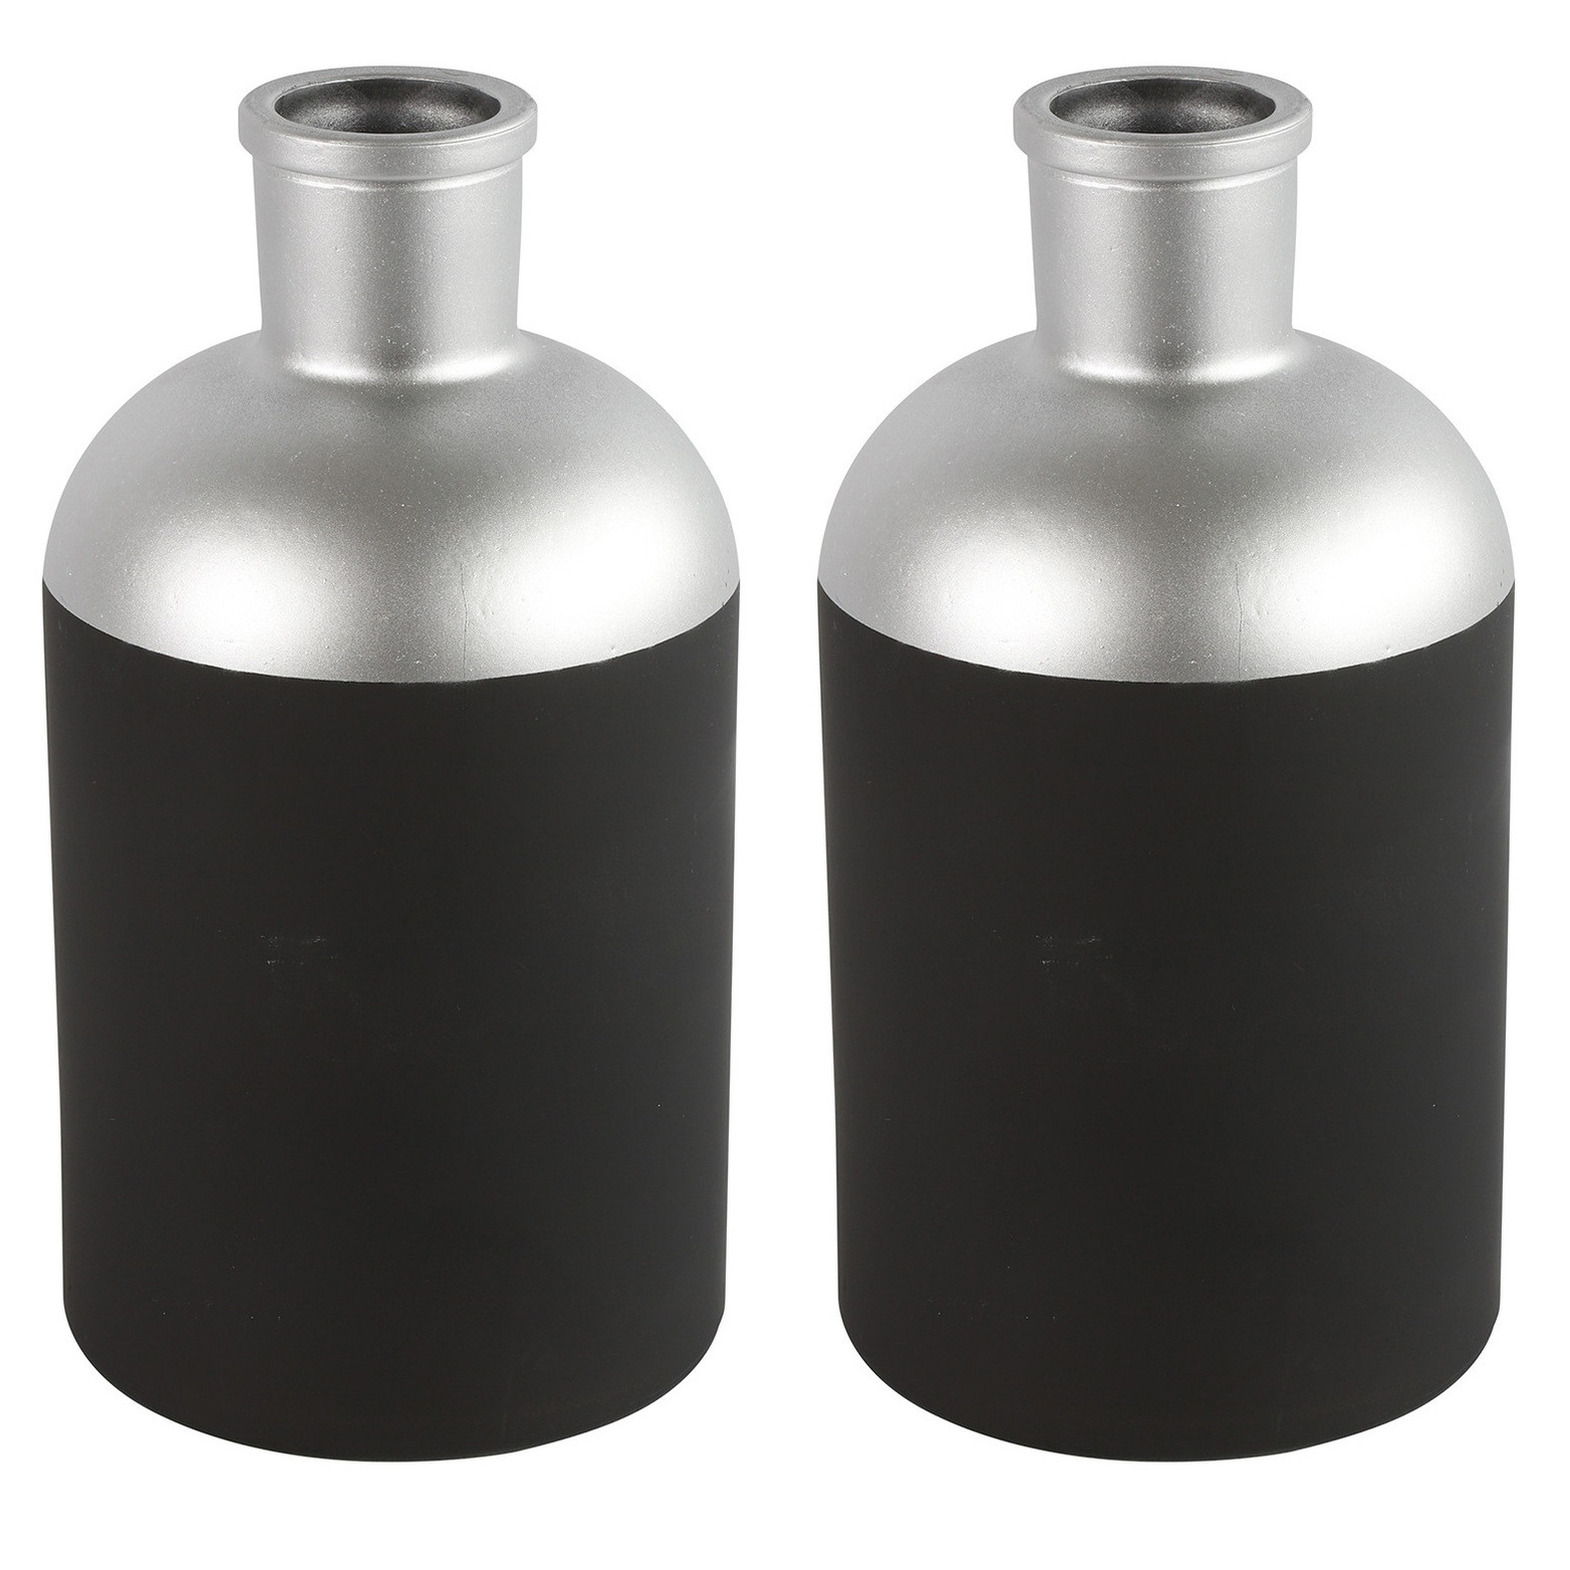 Countryfield Bloemen-deco vaas 2x zwart-zilver glas luxe fles vorm D14 x H26 cm